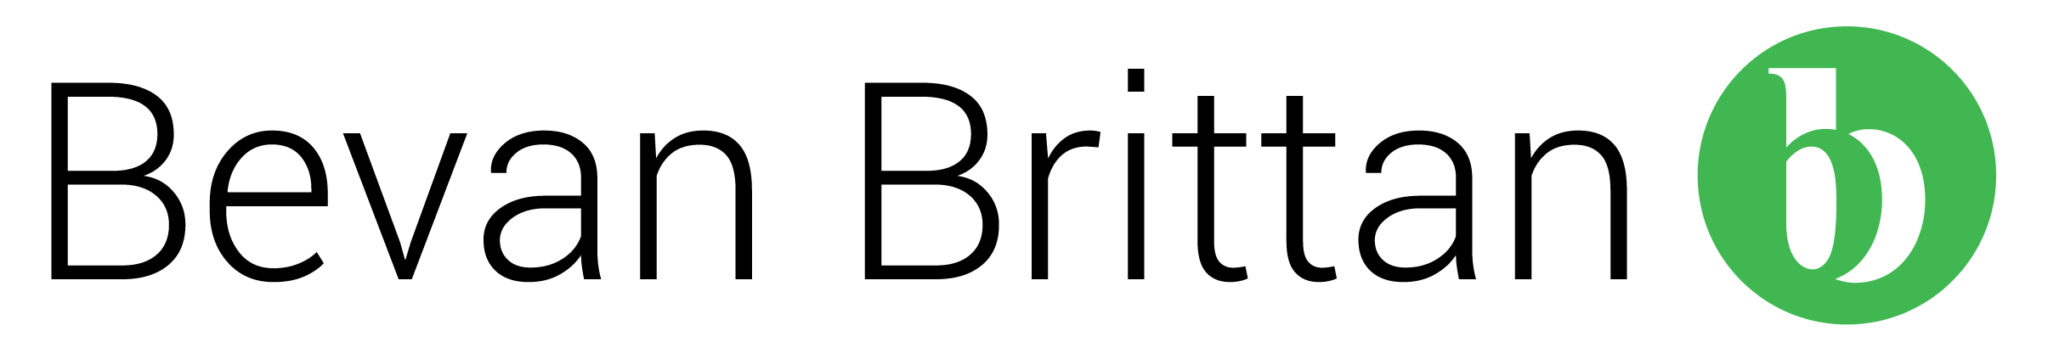 Bevan Brittan LLP